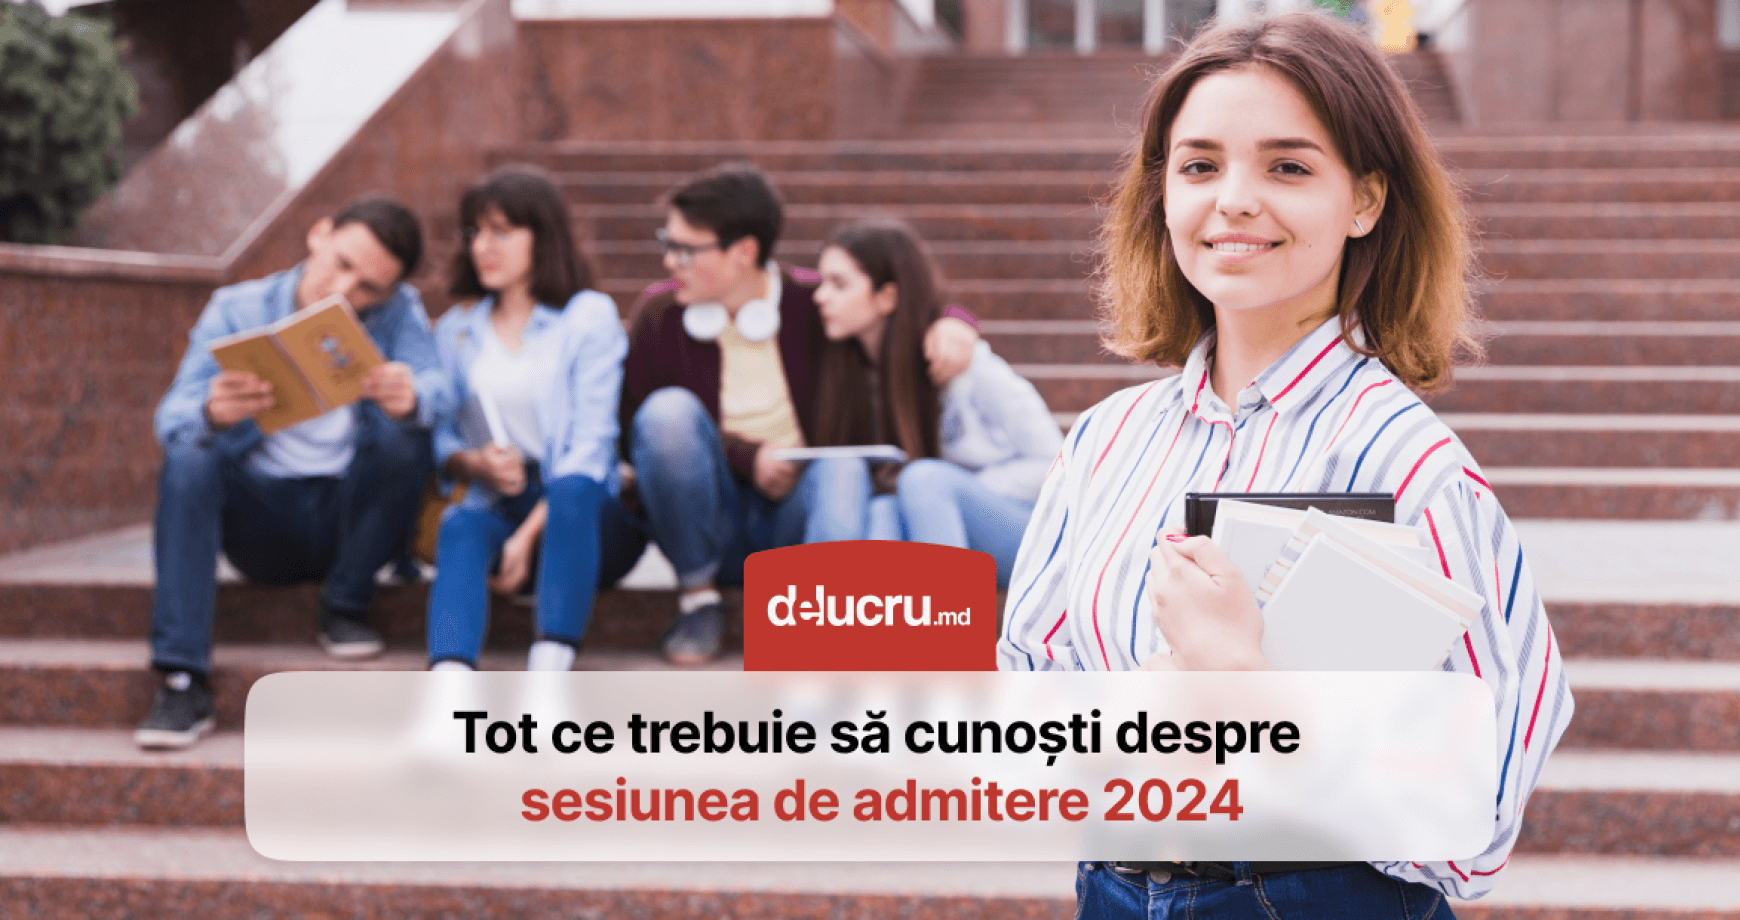 Când va începe admiterea în universitățile și colegiile din Moldova?